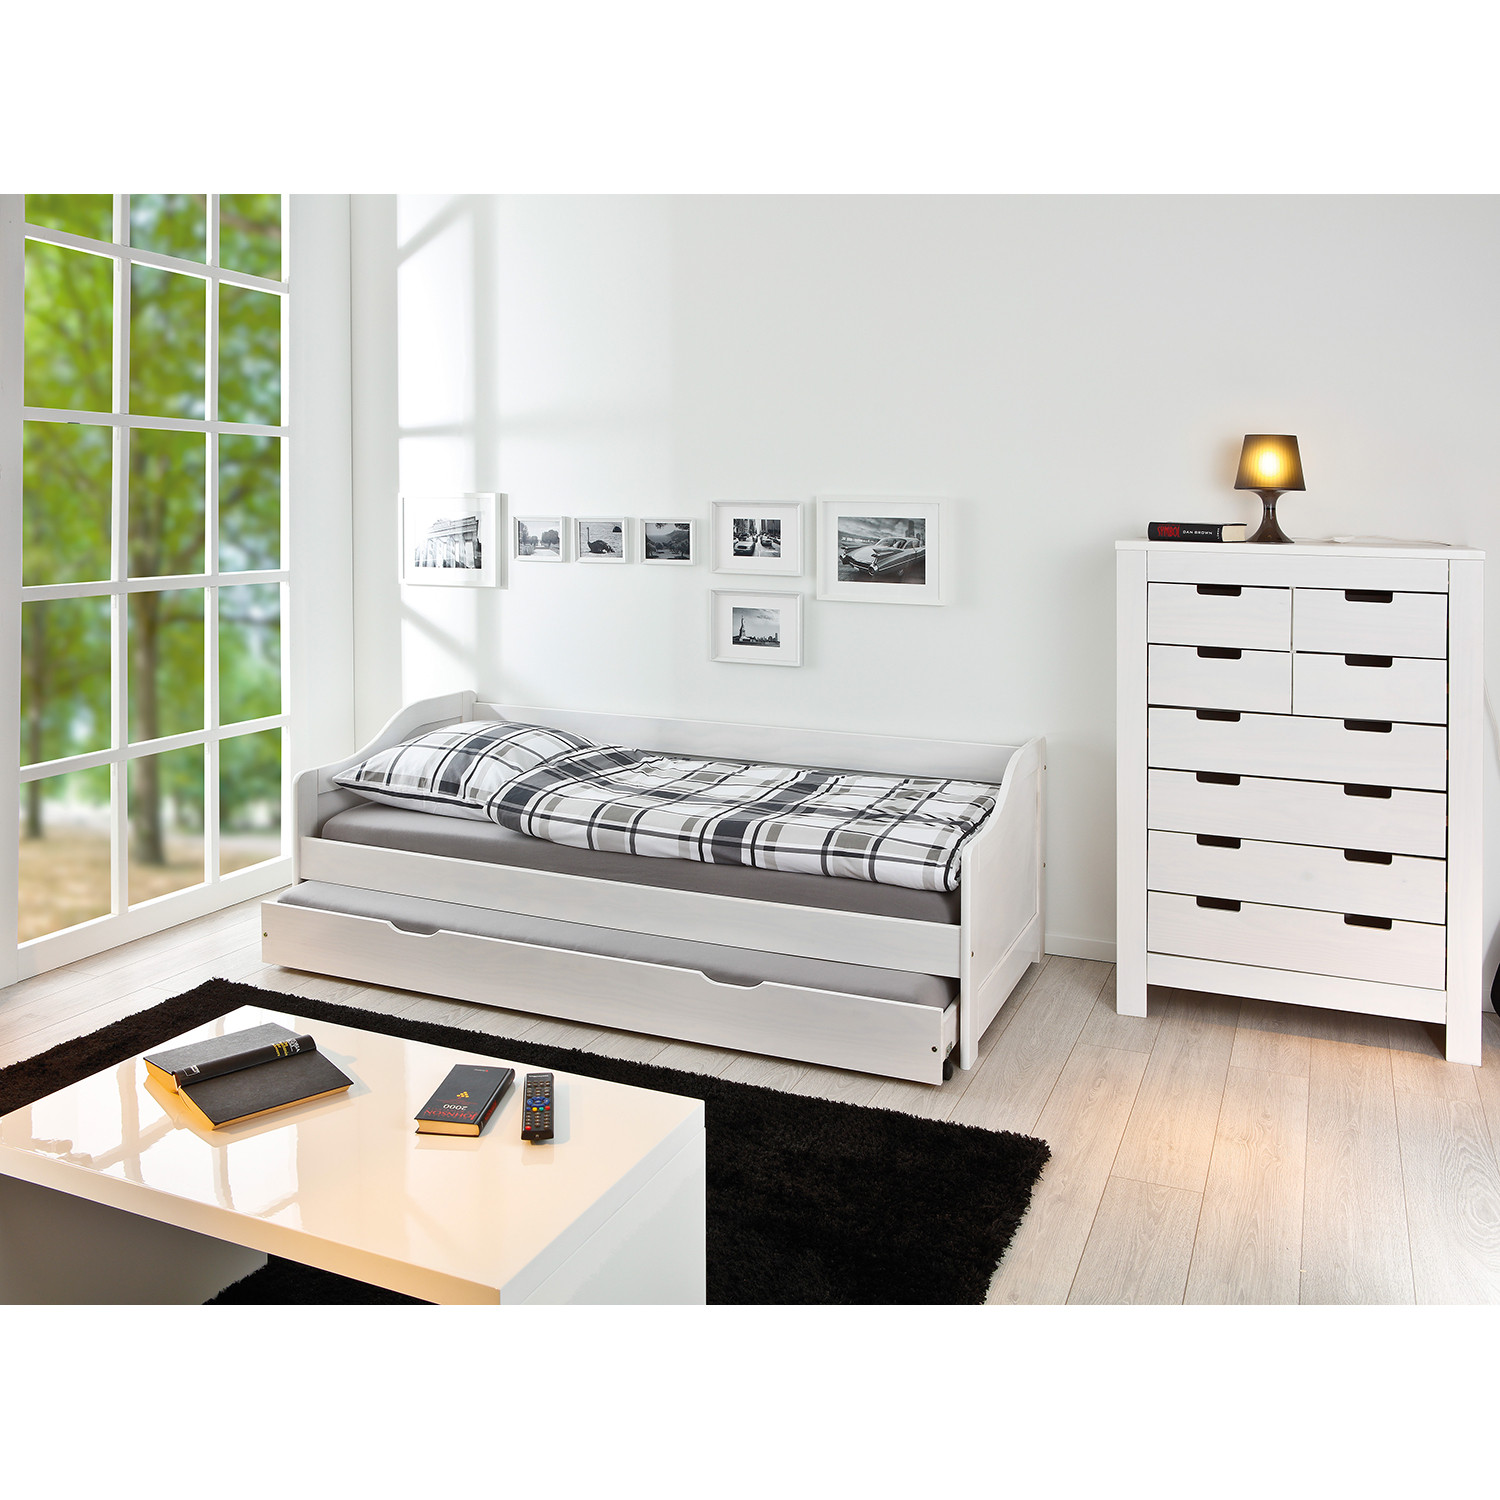 IDEA Односпальная кровать с дополнительной кроватью ЛАУРА белый